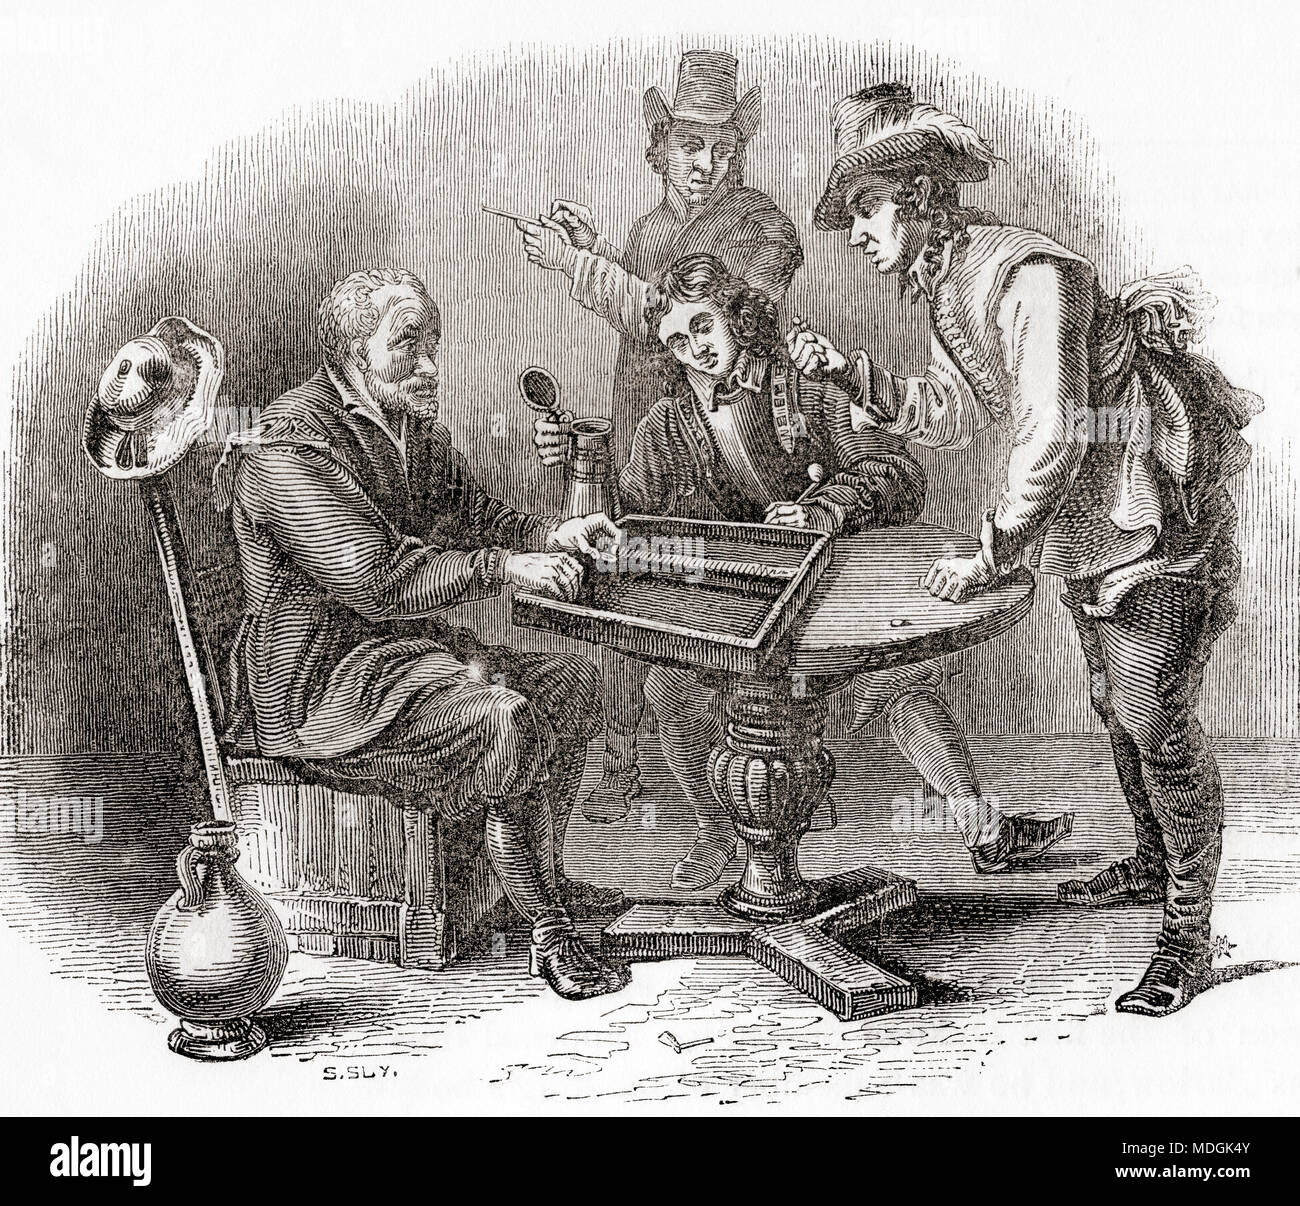 Les hommes de jouer à un jeu de Tric Trac, aka Tables, une forme française de backgammon. À partir de la vieille Angleterre : A Pictorial Museum, publié 1847. Banque D'Images